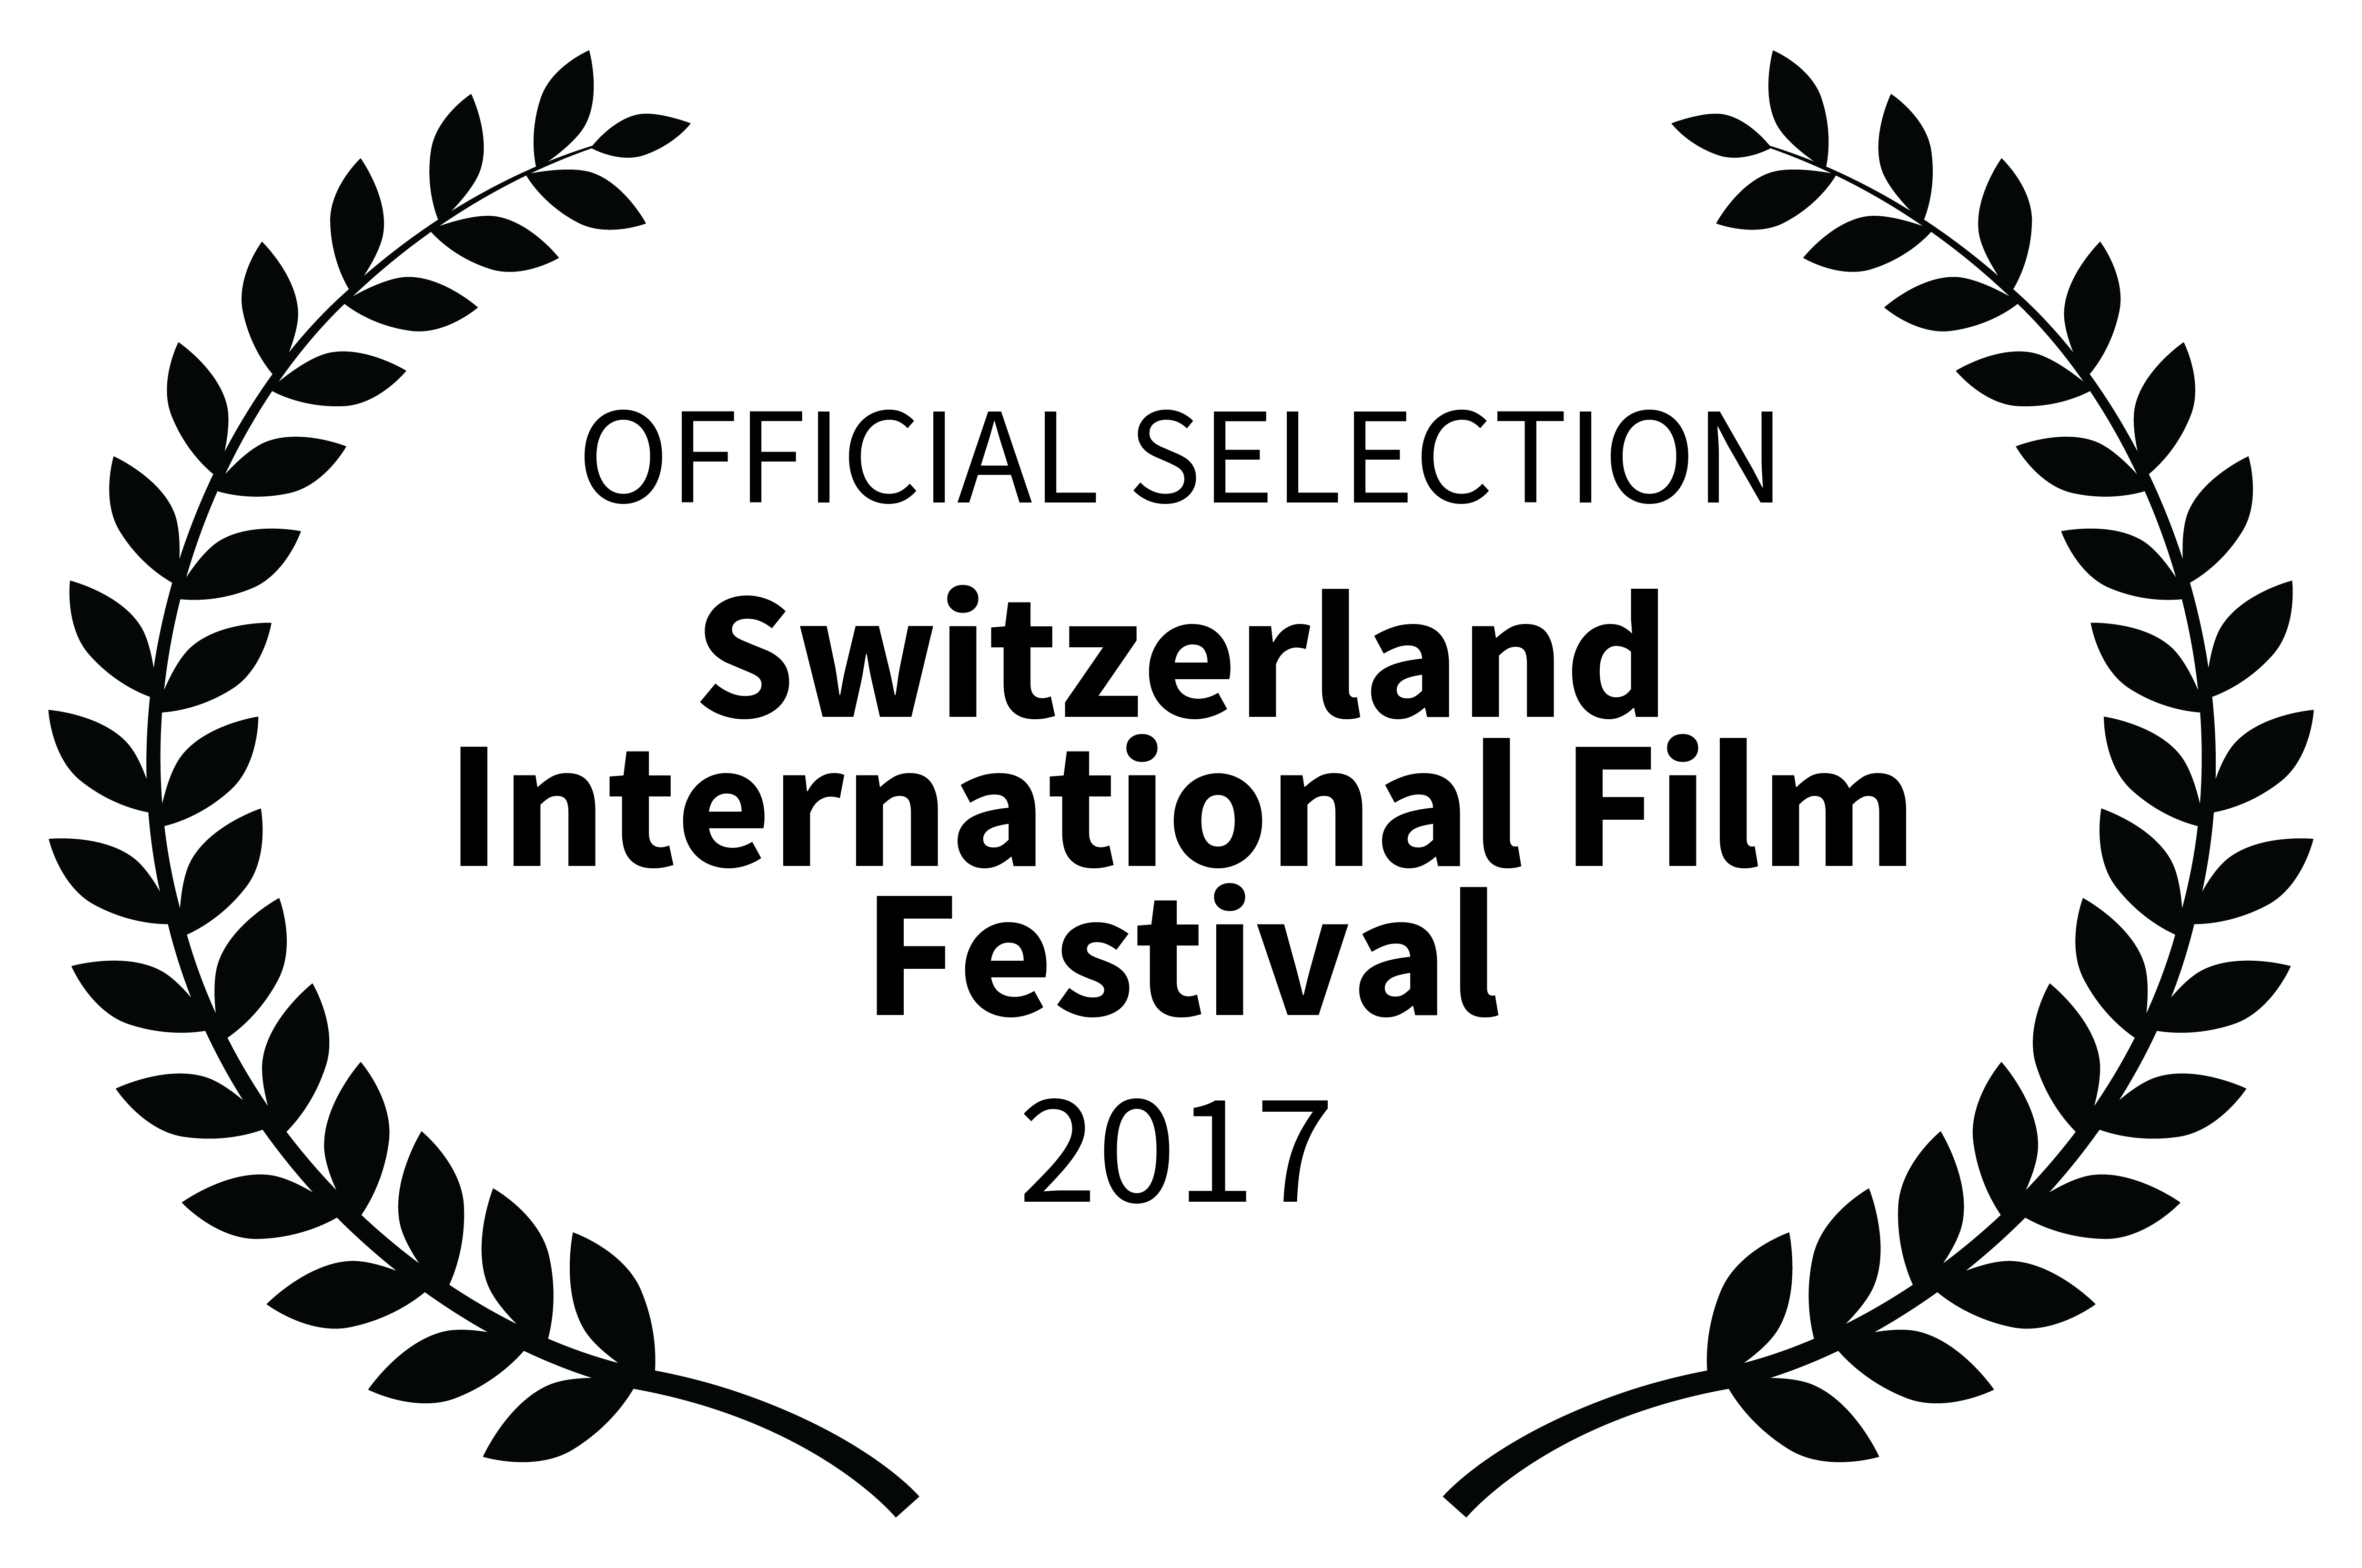 Festival- Switzerland International Film Festival-2017 OFFICIALSELECTION-2